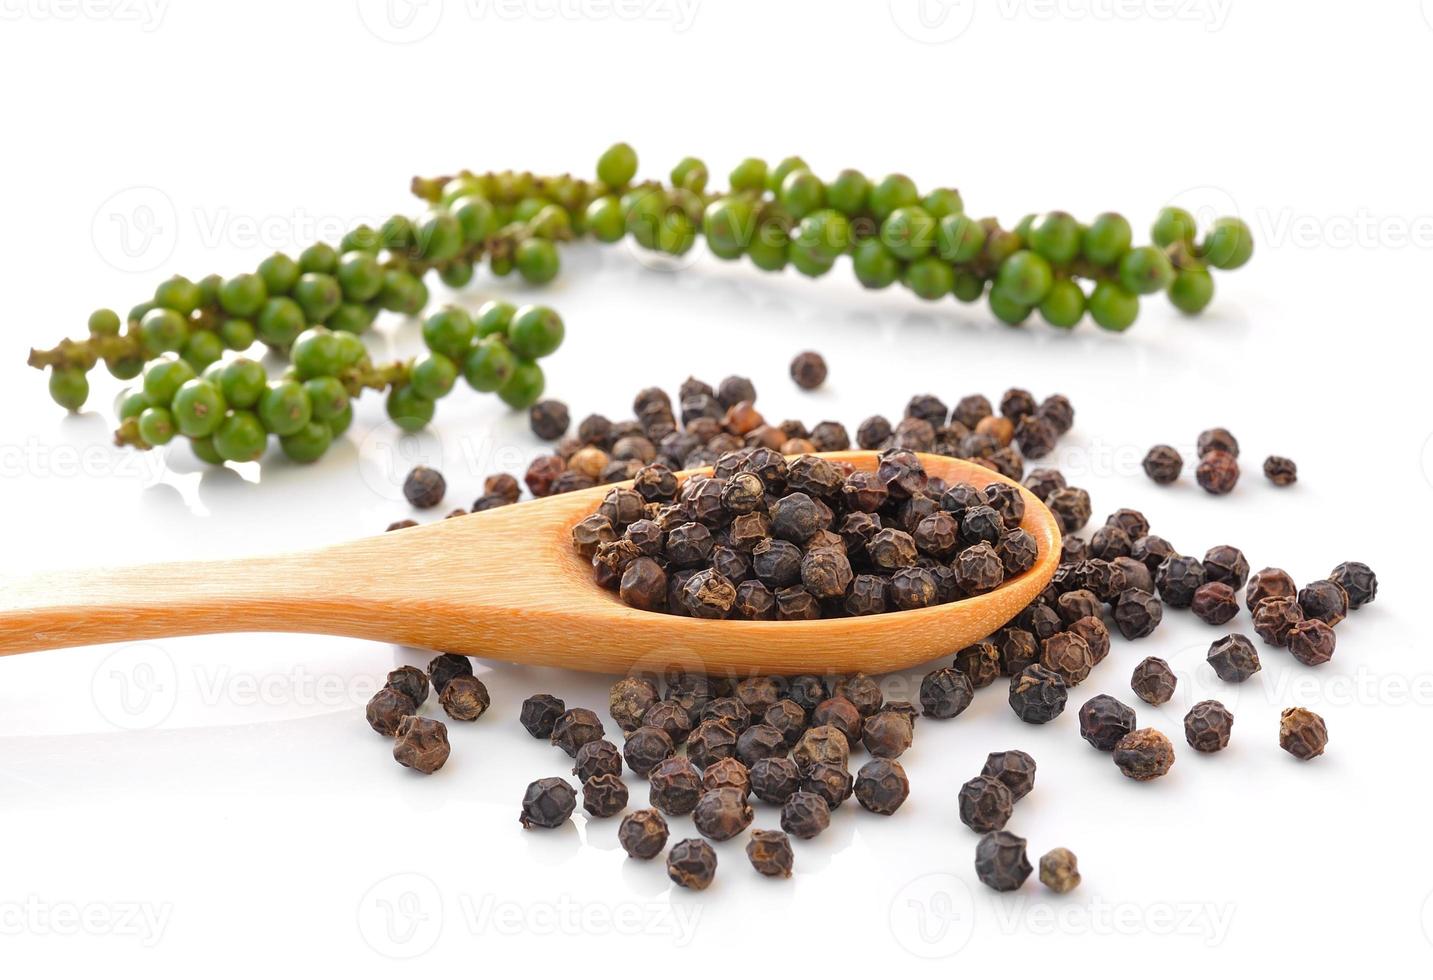 cuillère avec des granules de poivre noir entier et des grappes de poivre vert frais isolé sur fond blanc photo